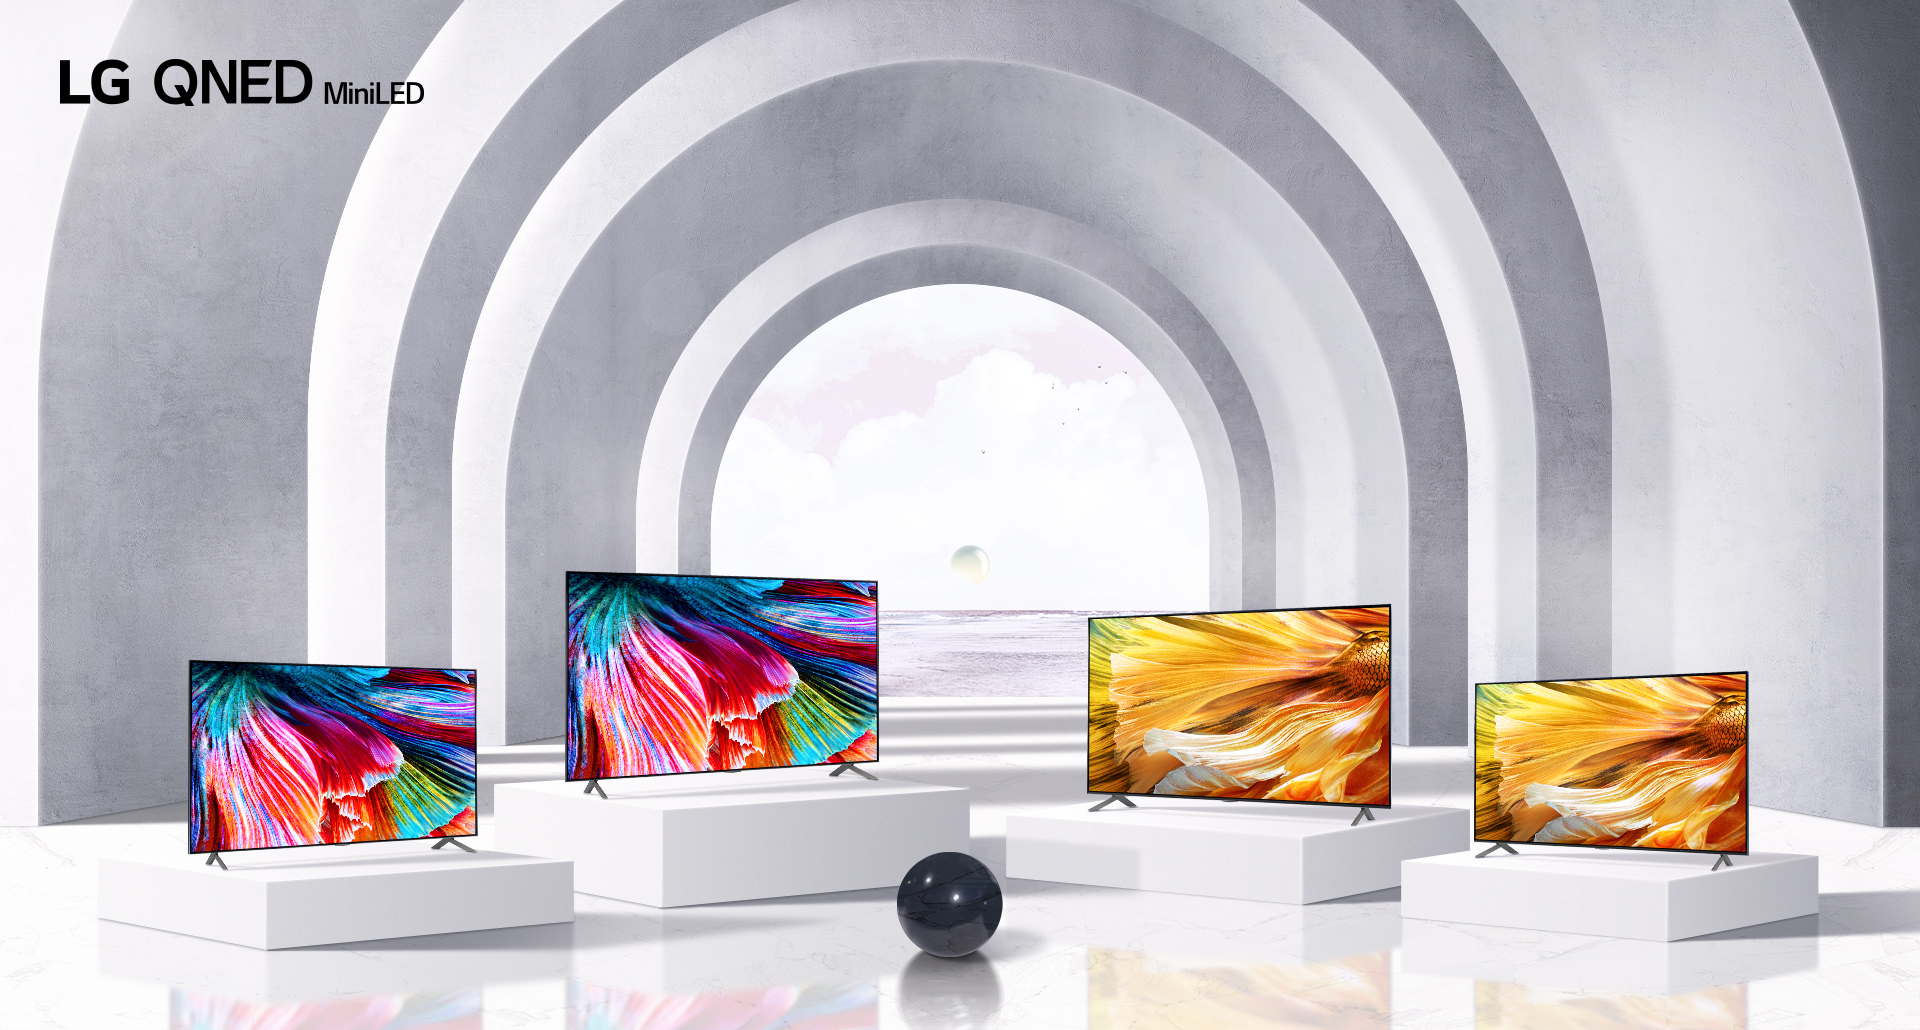 LG обновила линейку телевизоров 2021: новое качество, инновации и стиль